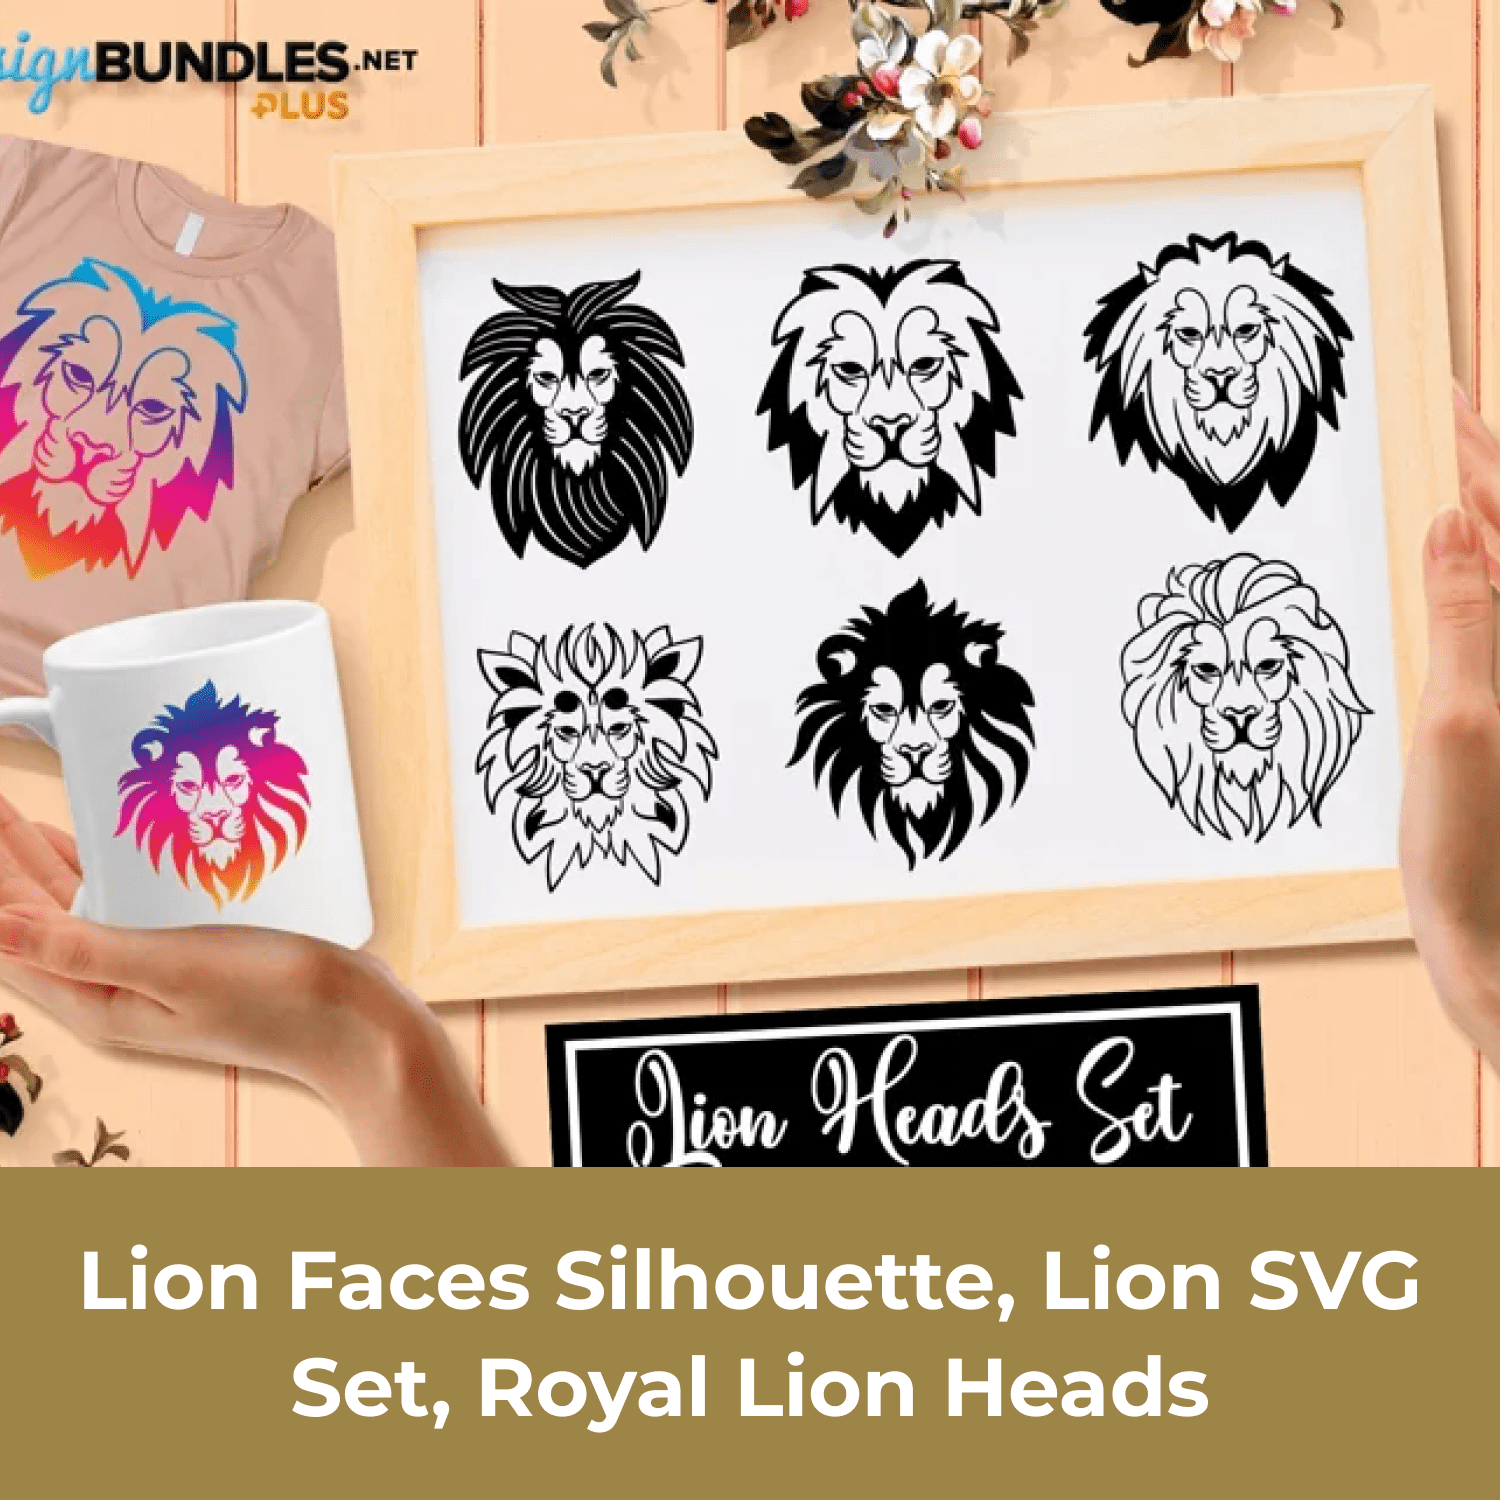 Lion Faces Silhouette, Lion SVG Set, Royal Lion Heads cover image.